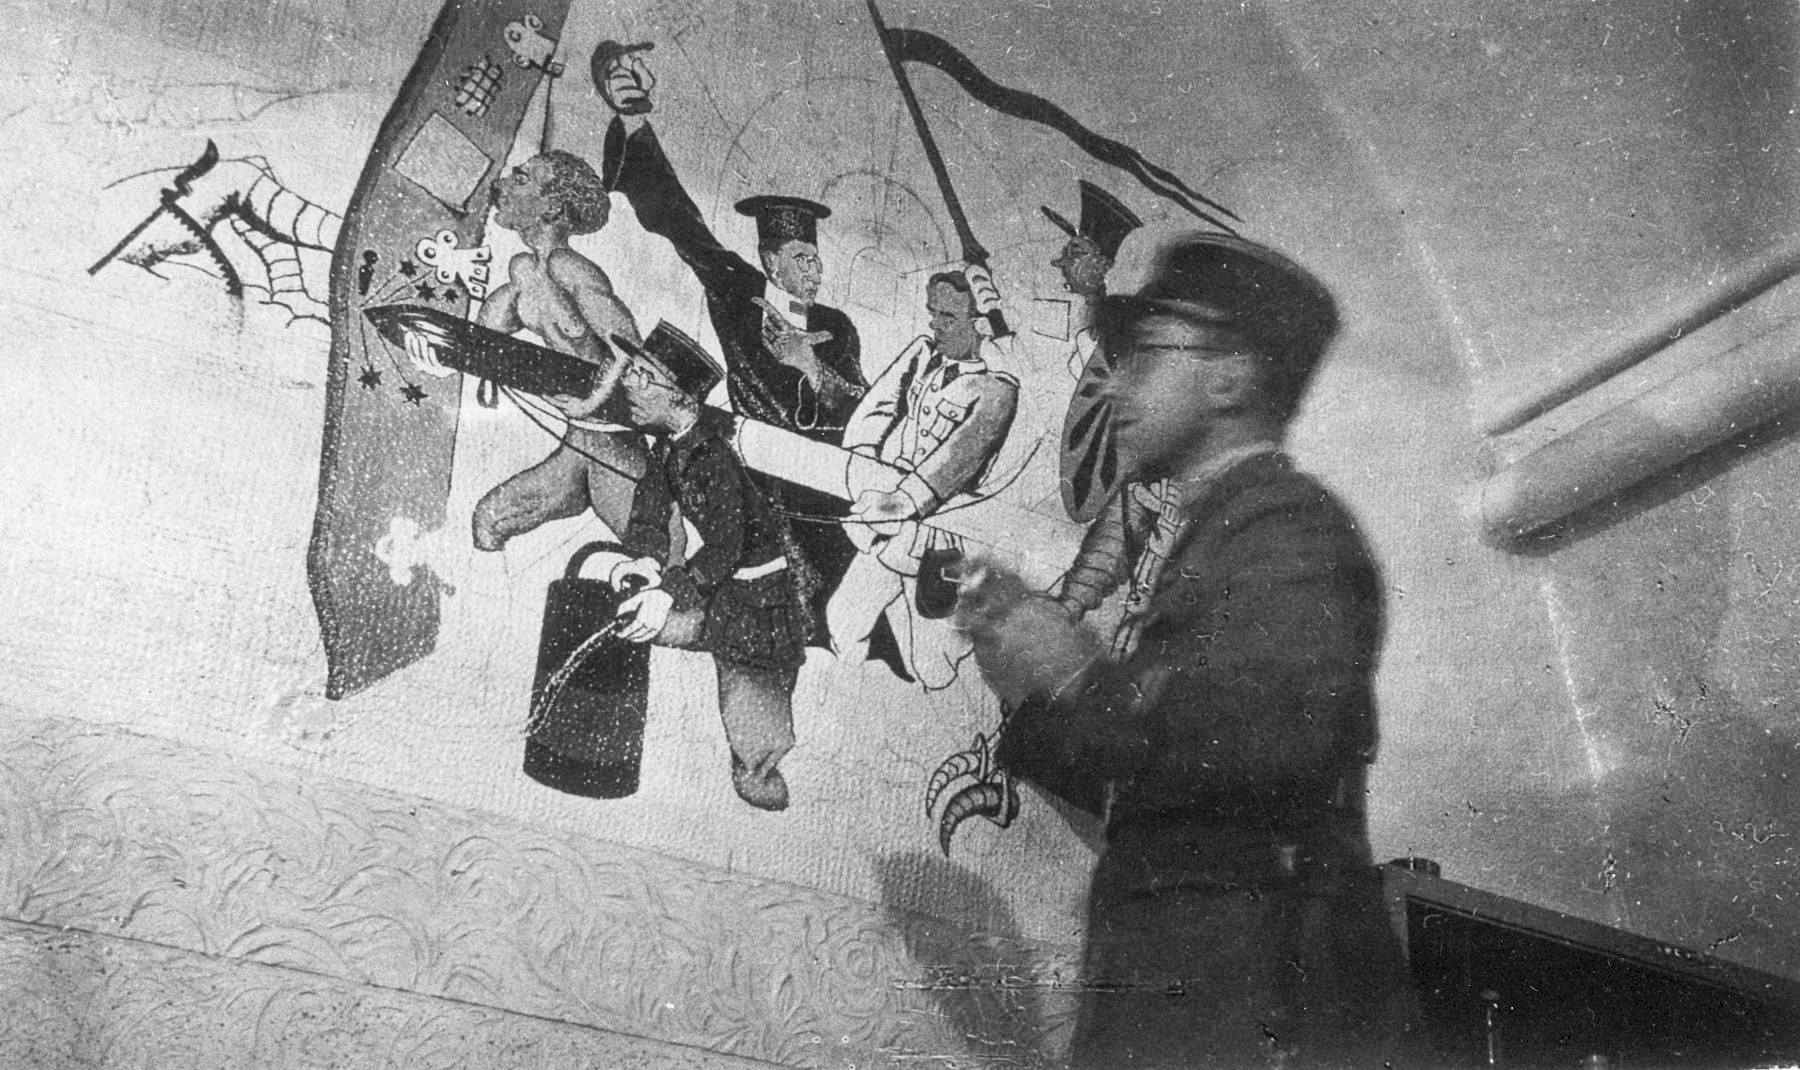 Ligne Maginot - BOUSSE - A24 - (Ouvrage d'infanterie) - La peinture murale de la popote, décembre 1939
Le Lt Gendre, peintre